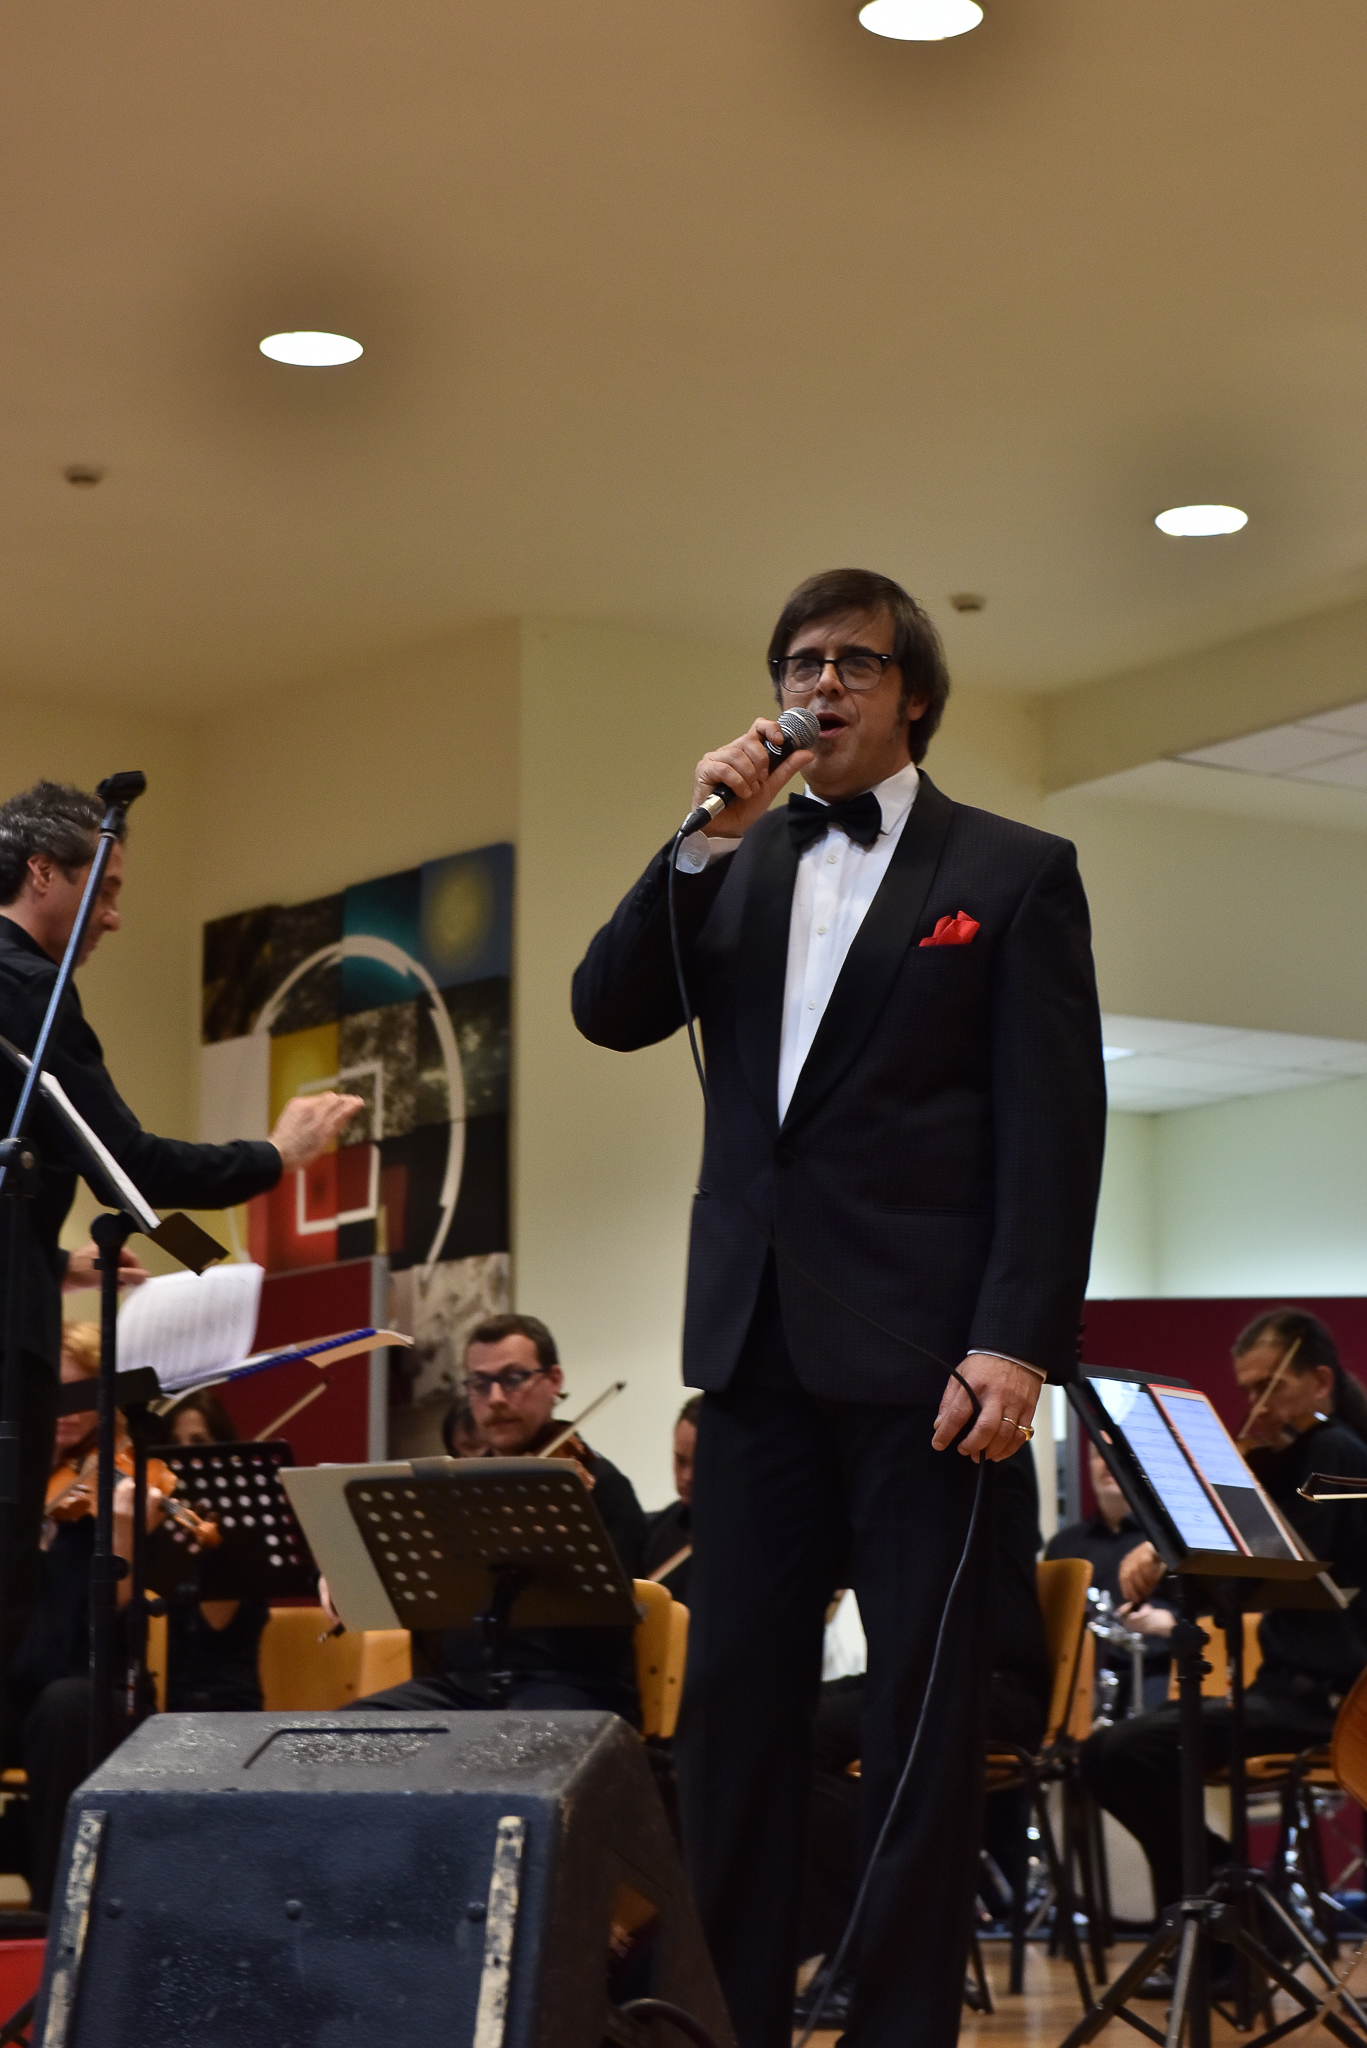 gallery “Tor Vergata” ospita e premia Ennio Morricone nel XXV anniversario di “Roma Sinfonietta”